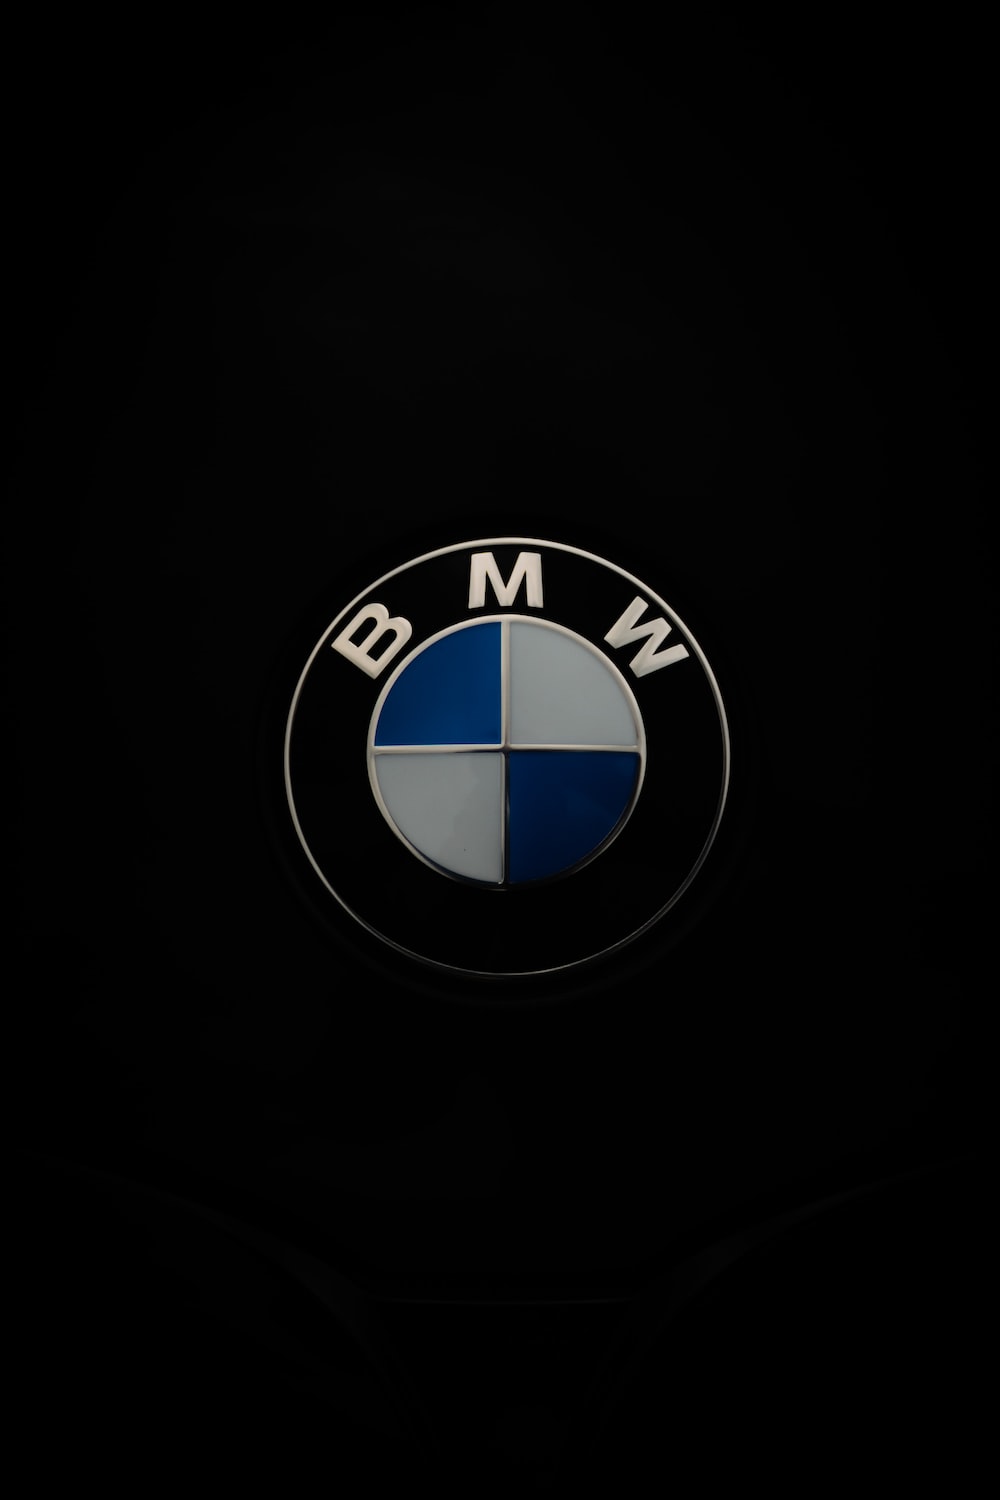 Download BMW LOGO WALLPAPER 4K HD APK Free for Android - BMW LOGO WALLPAPER  4K HD APK Download